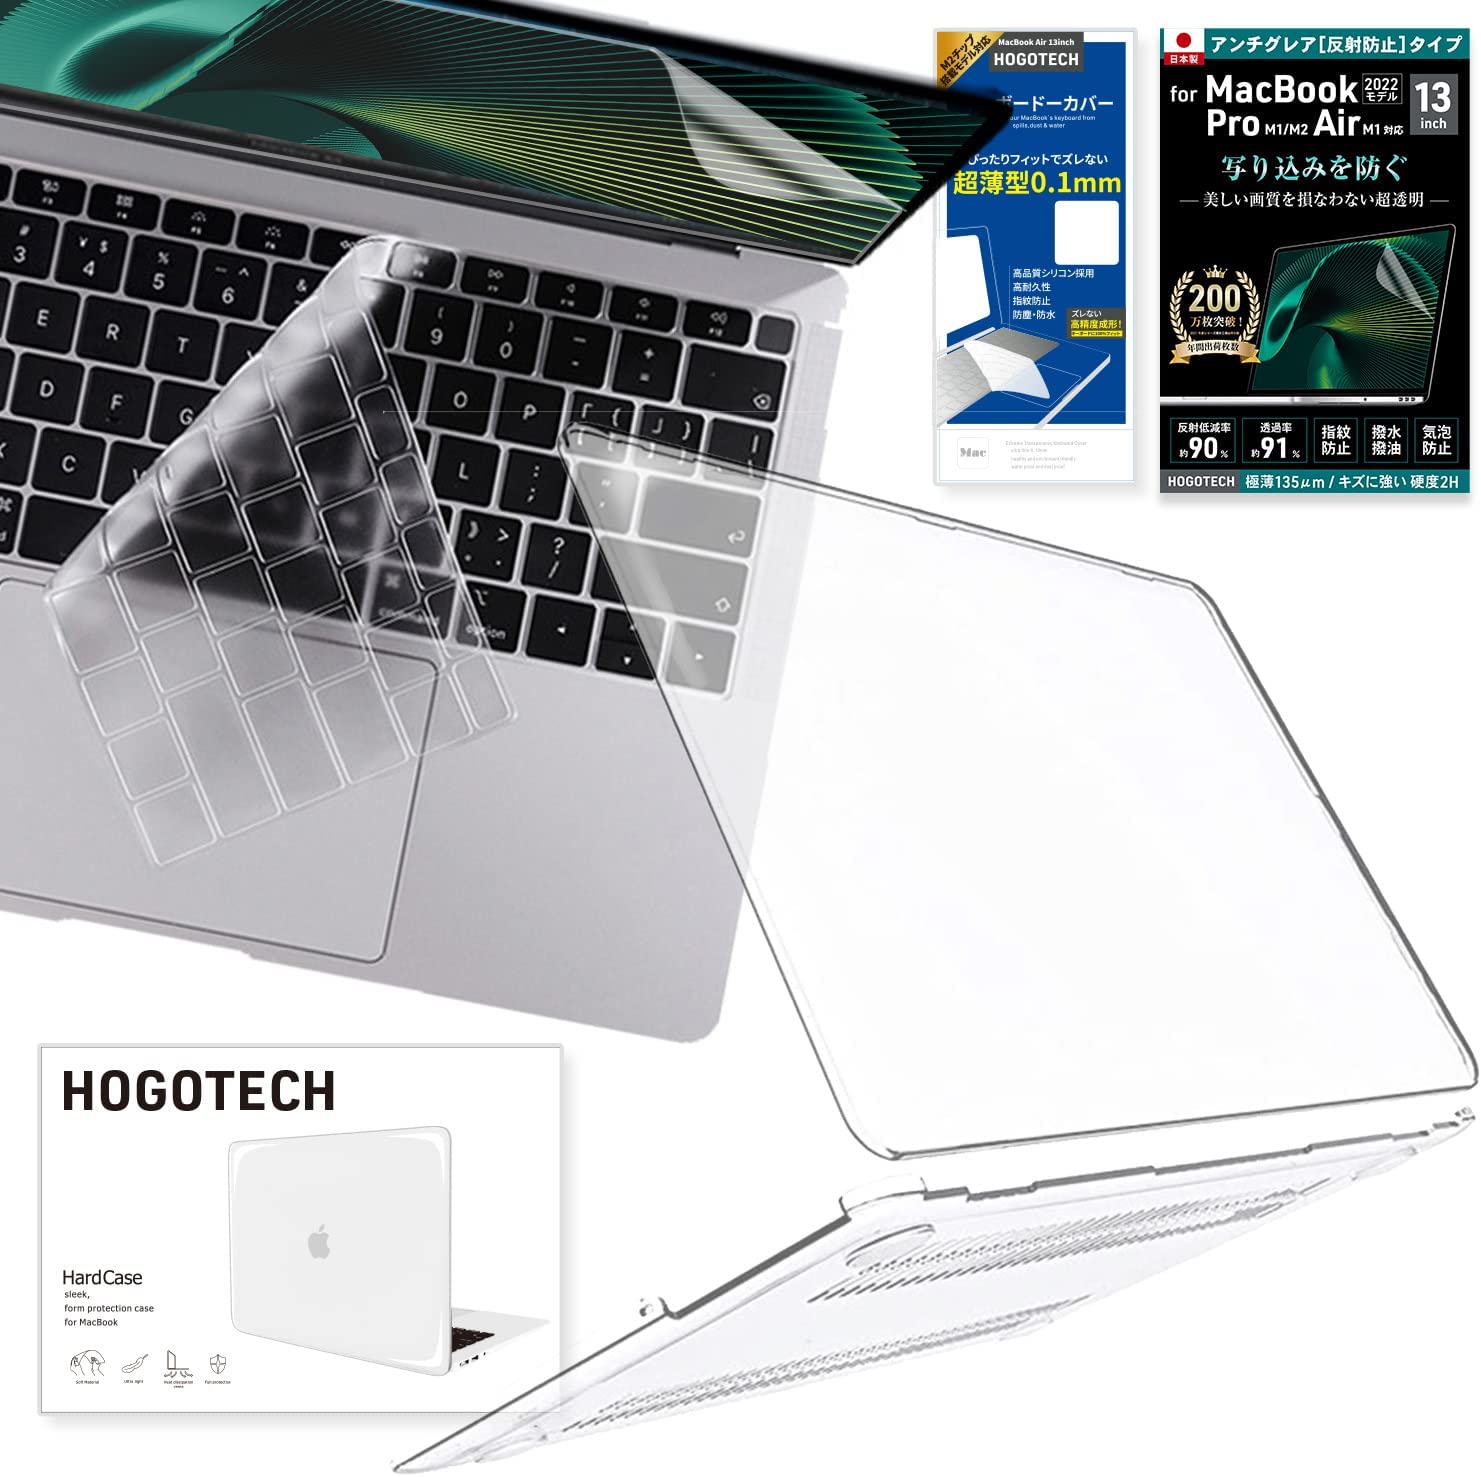 肌触りがいい MacBook Air Pro 13inch 14inch 16inch 本体 クリアカバー ハードケース 透明 保護ケース 放熱設計  超薄軽量 HOGOTECH AVALIT